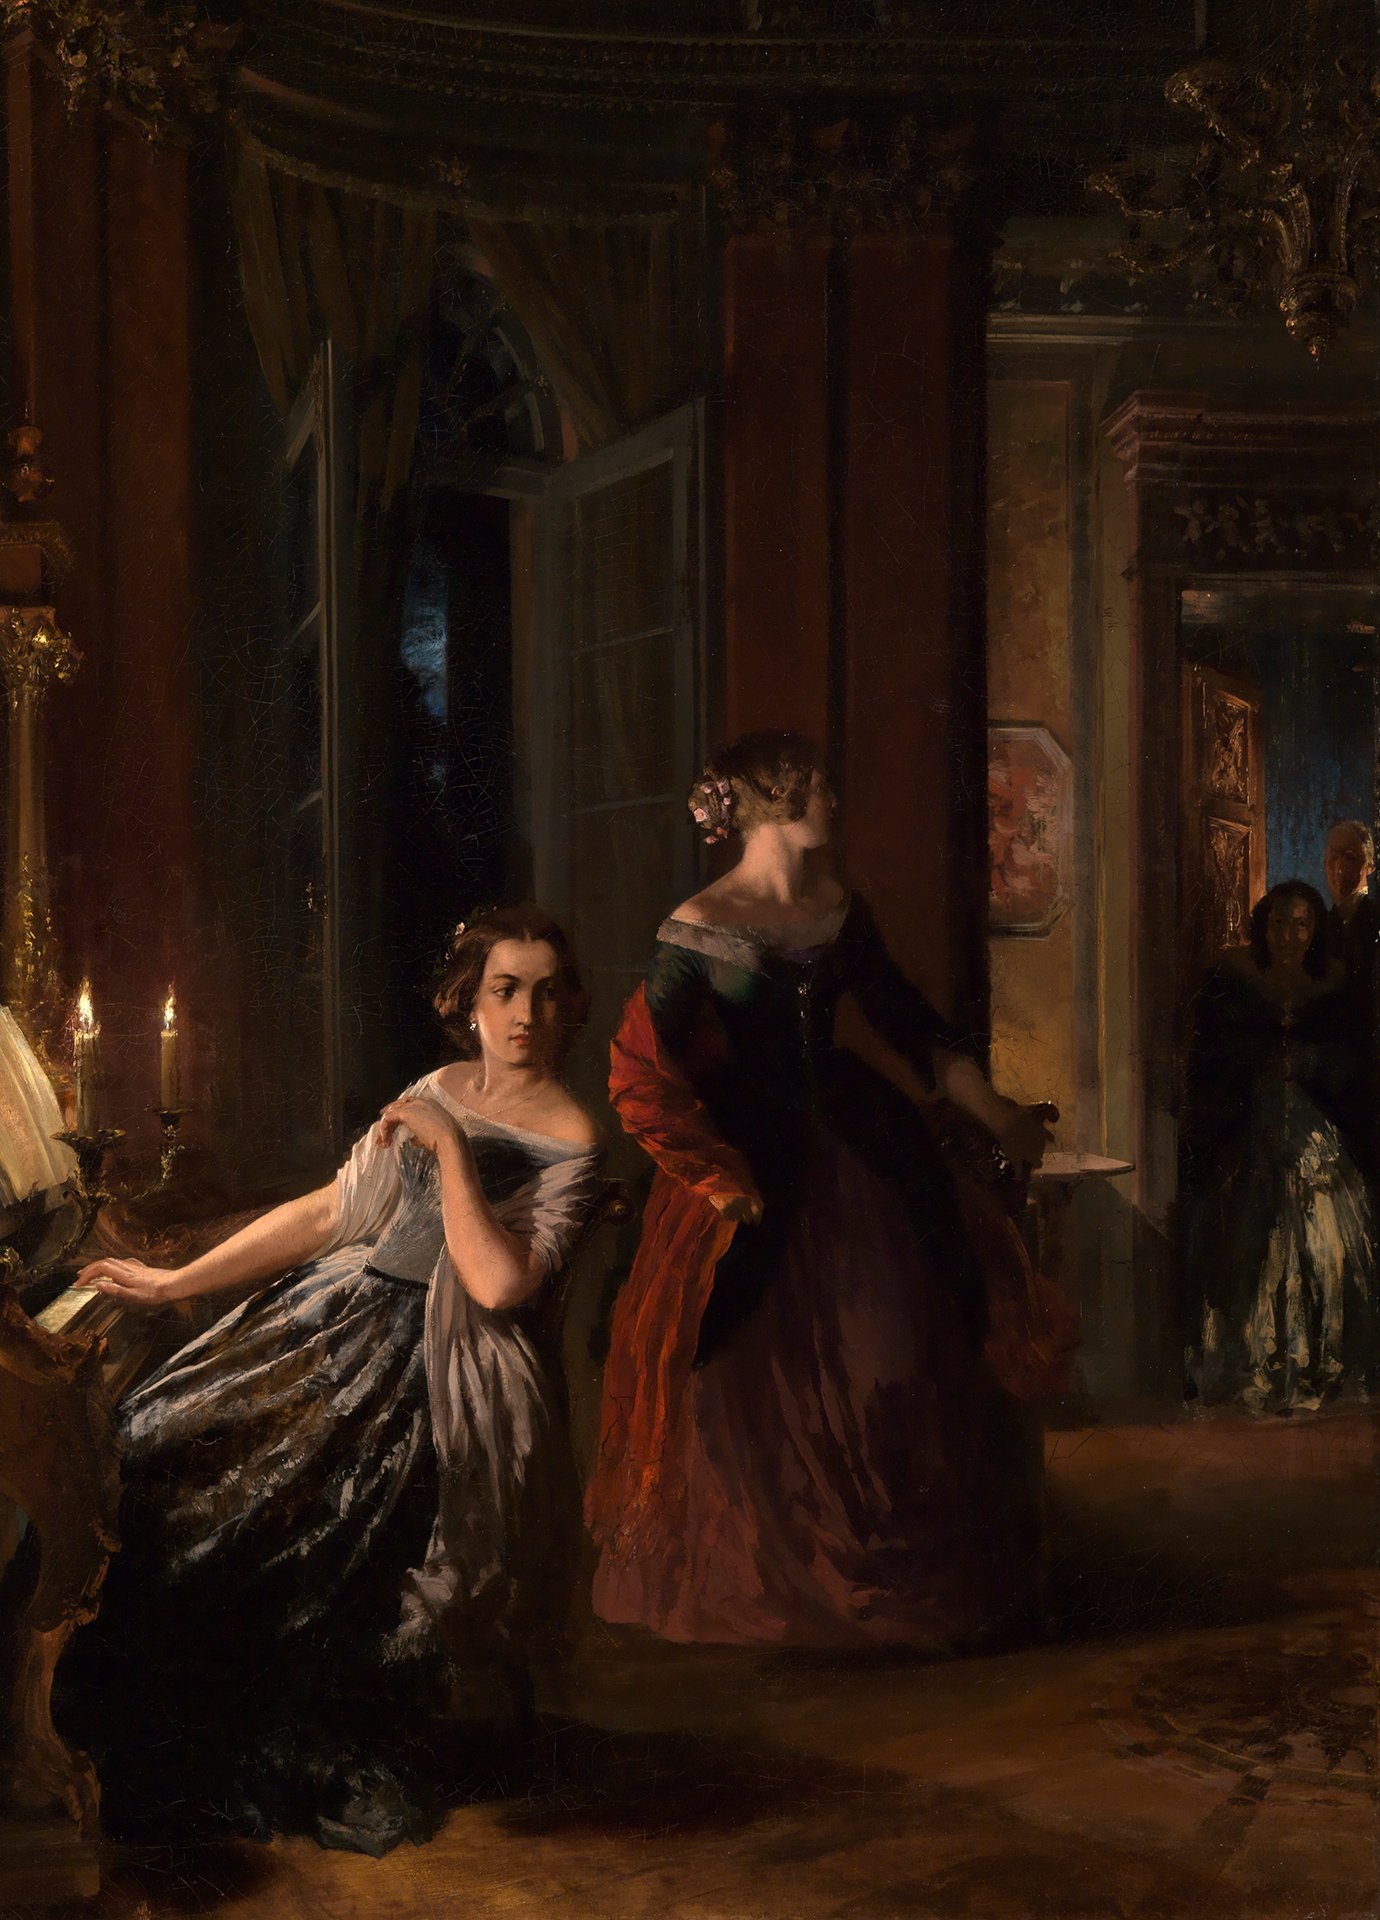 Abbildung des Gemäldes Adolph Menzel: Die Störung. Es zeigt zwei Frauen in ausladender Abendrobe, wovon eine an einem Klavier sitzt. Der Raum wirkt wie ein Innenraum eines Königsschlosses; mit Säulen Gold- und Marmorstuckaturen.